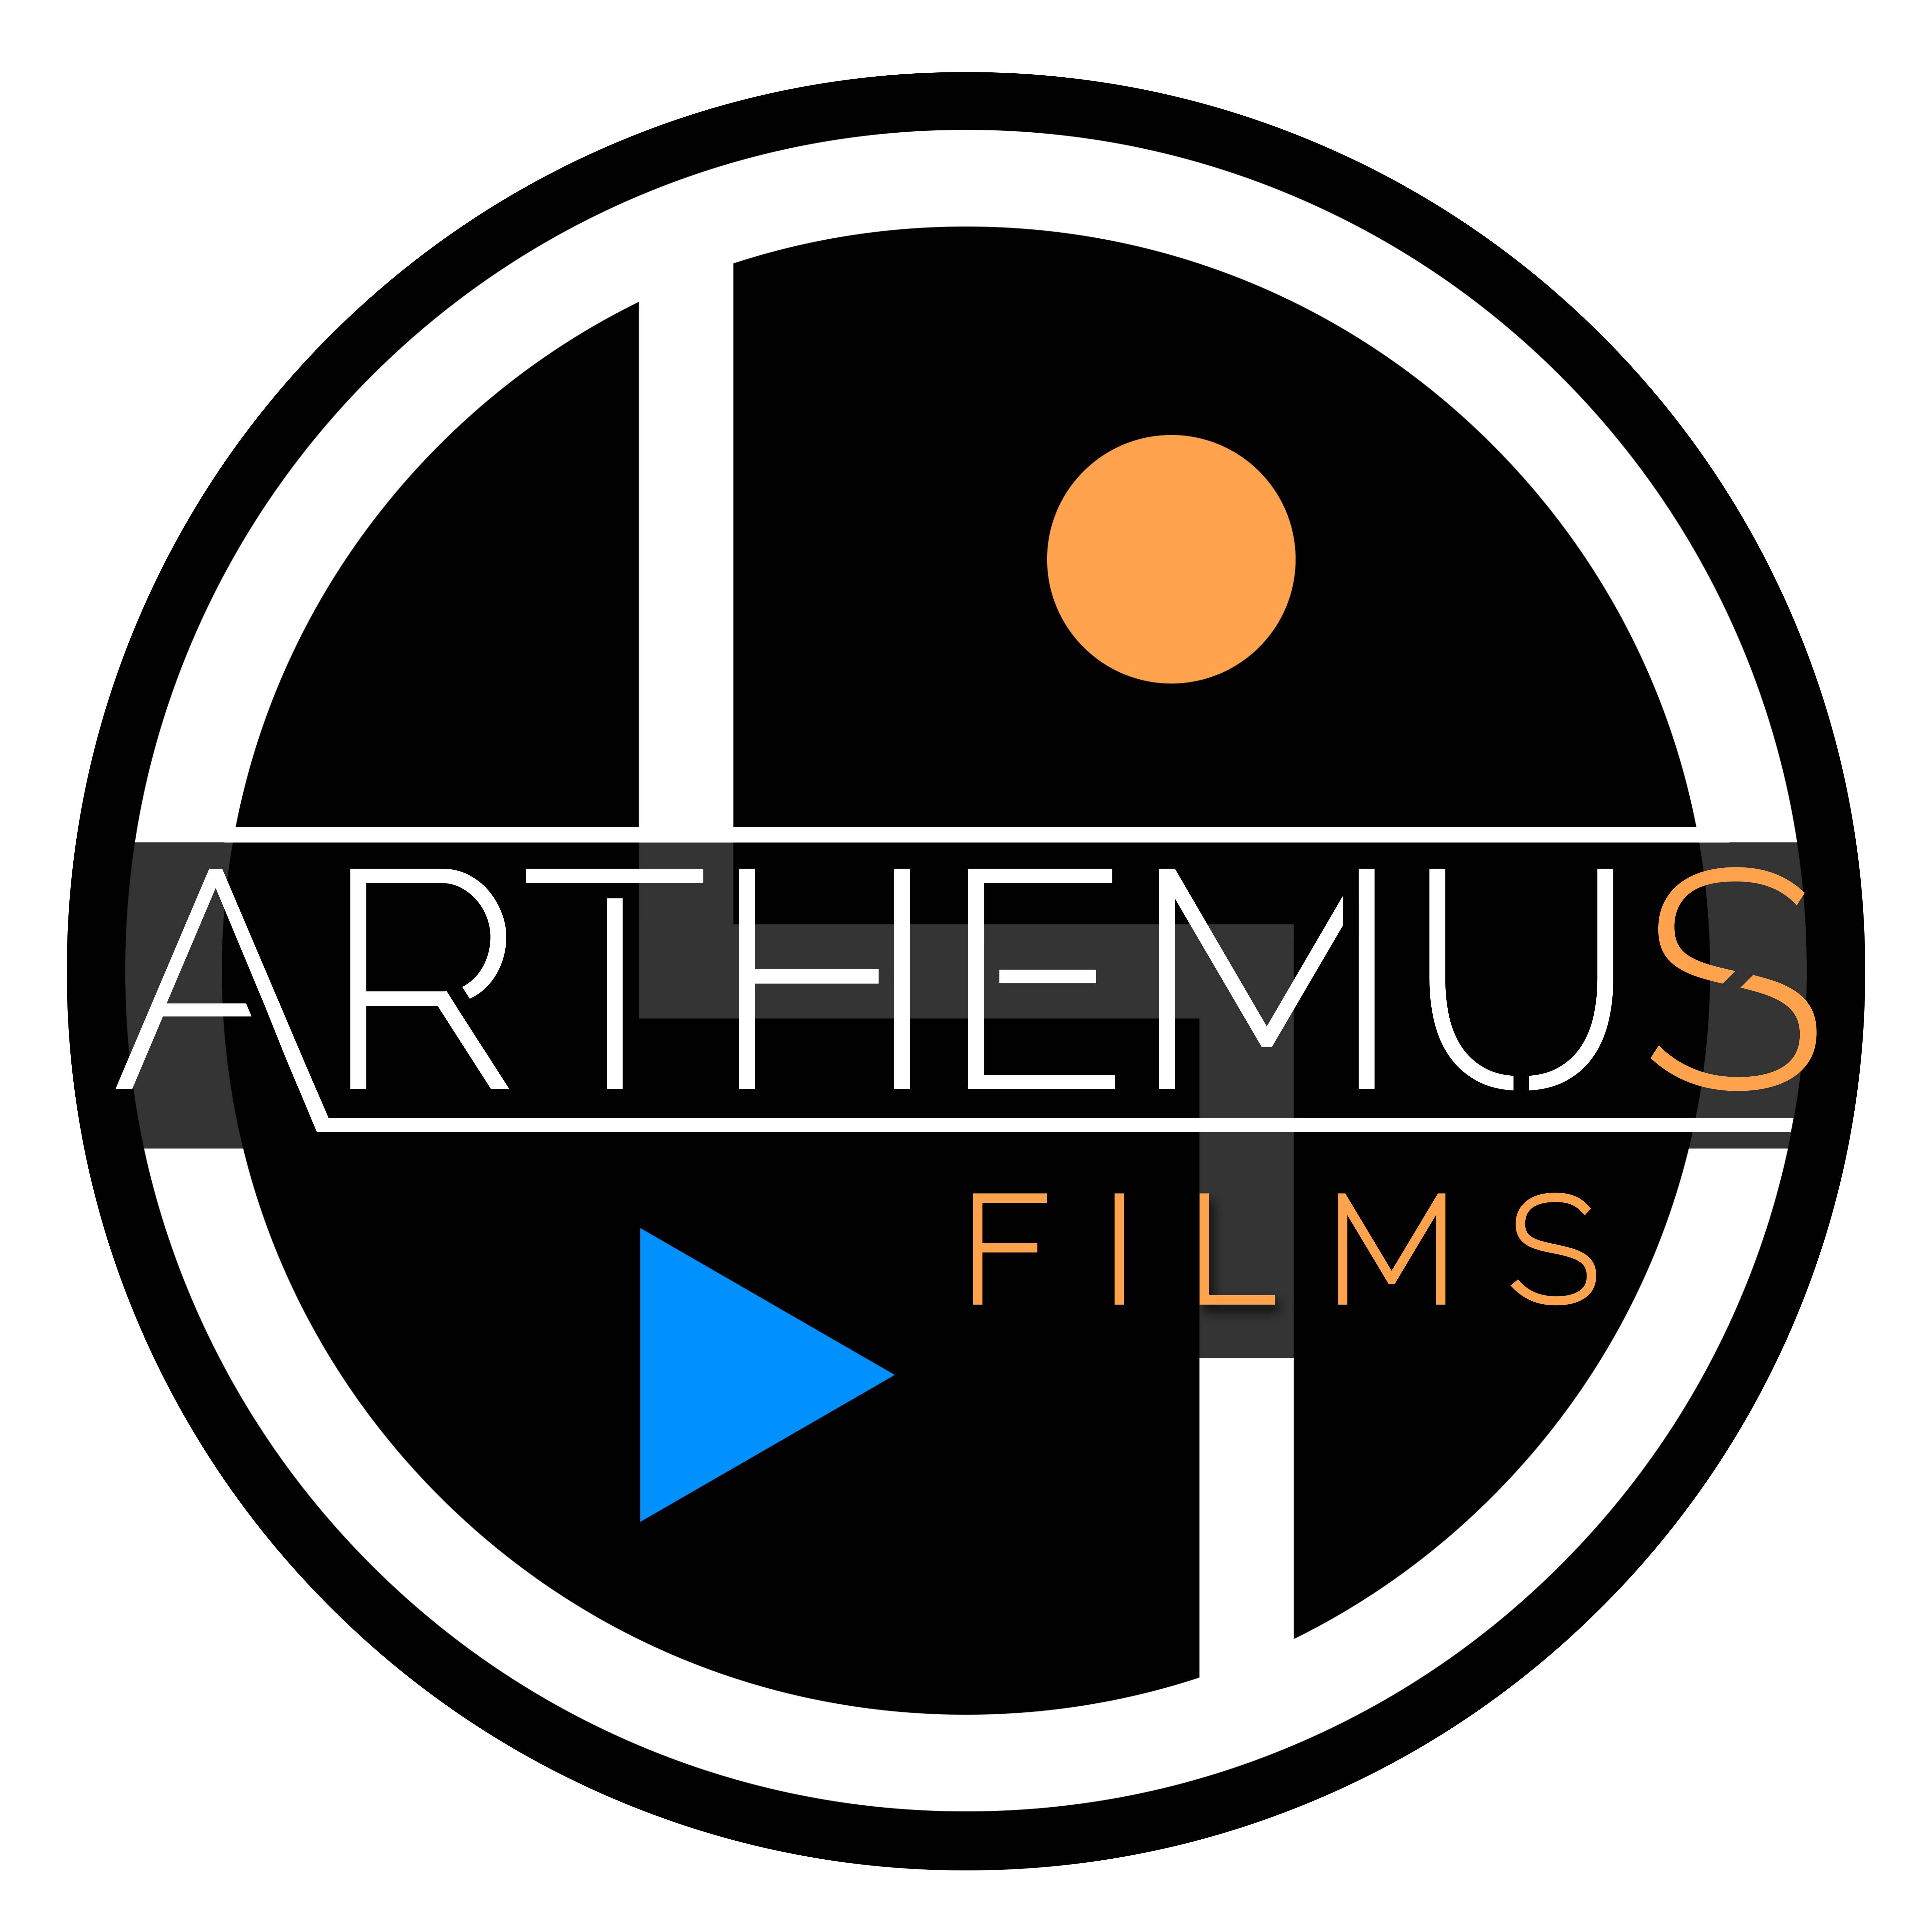 ARTHEMUS FILMS